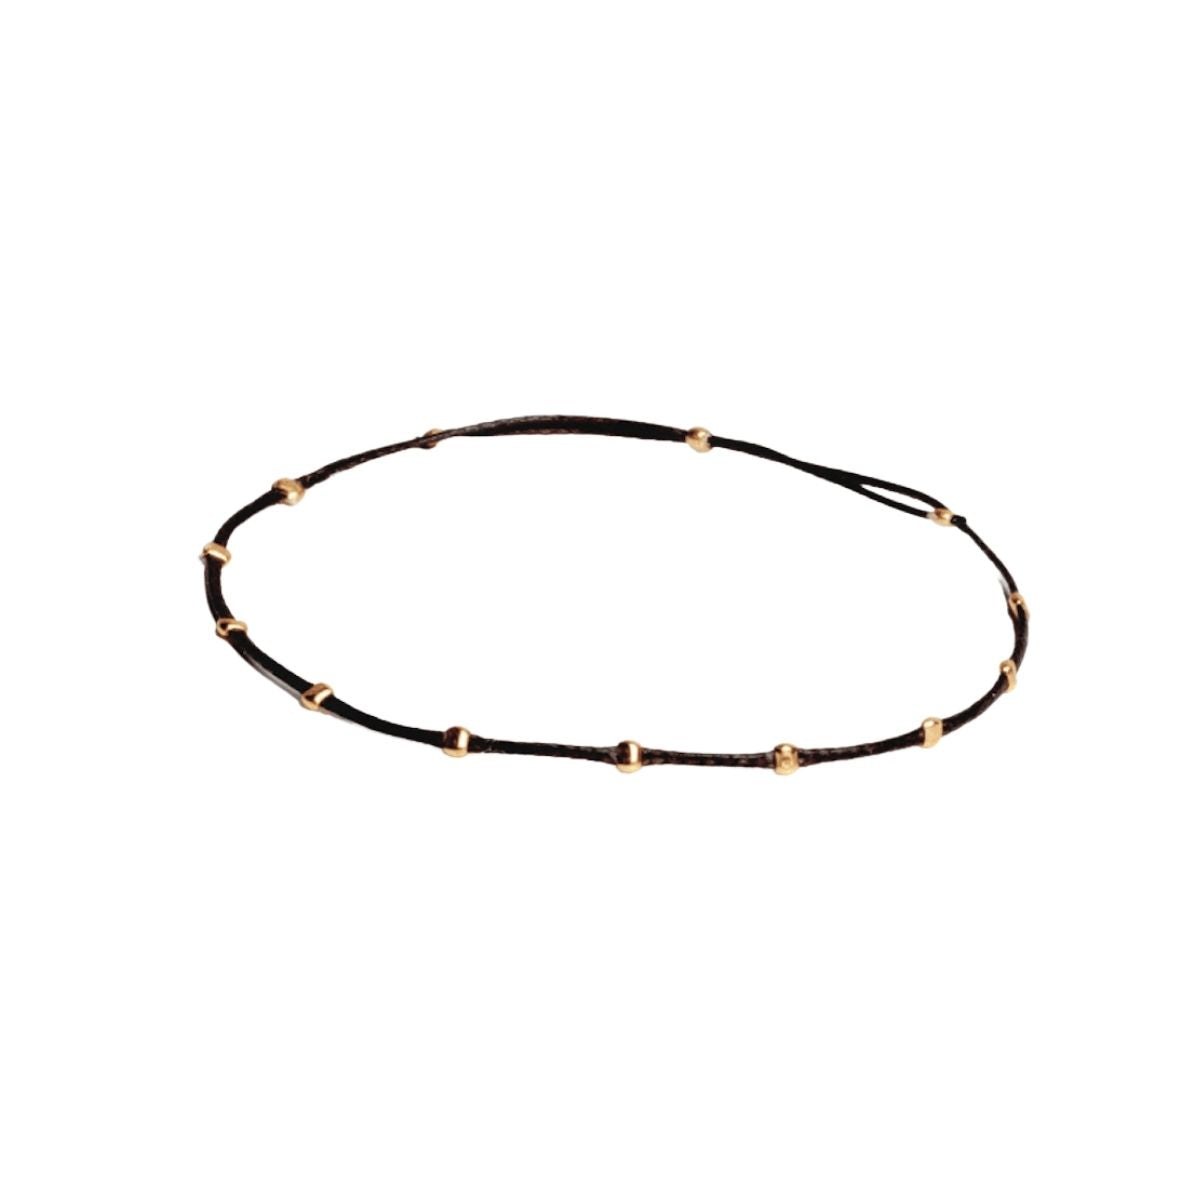 Bracelet 10 Dots Space Black/Gold - Armkette